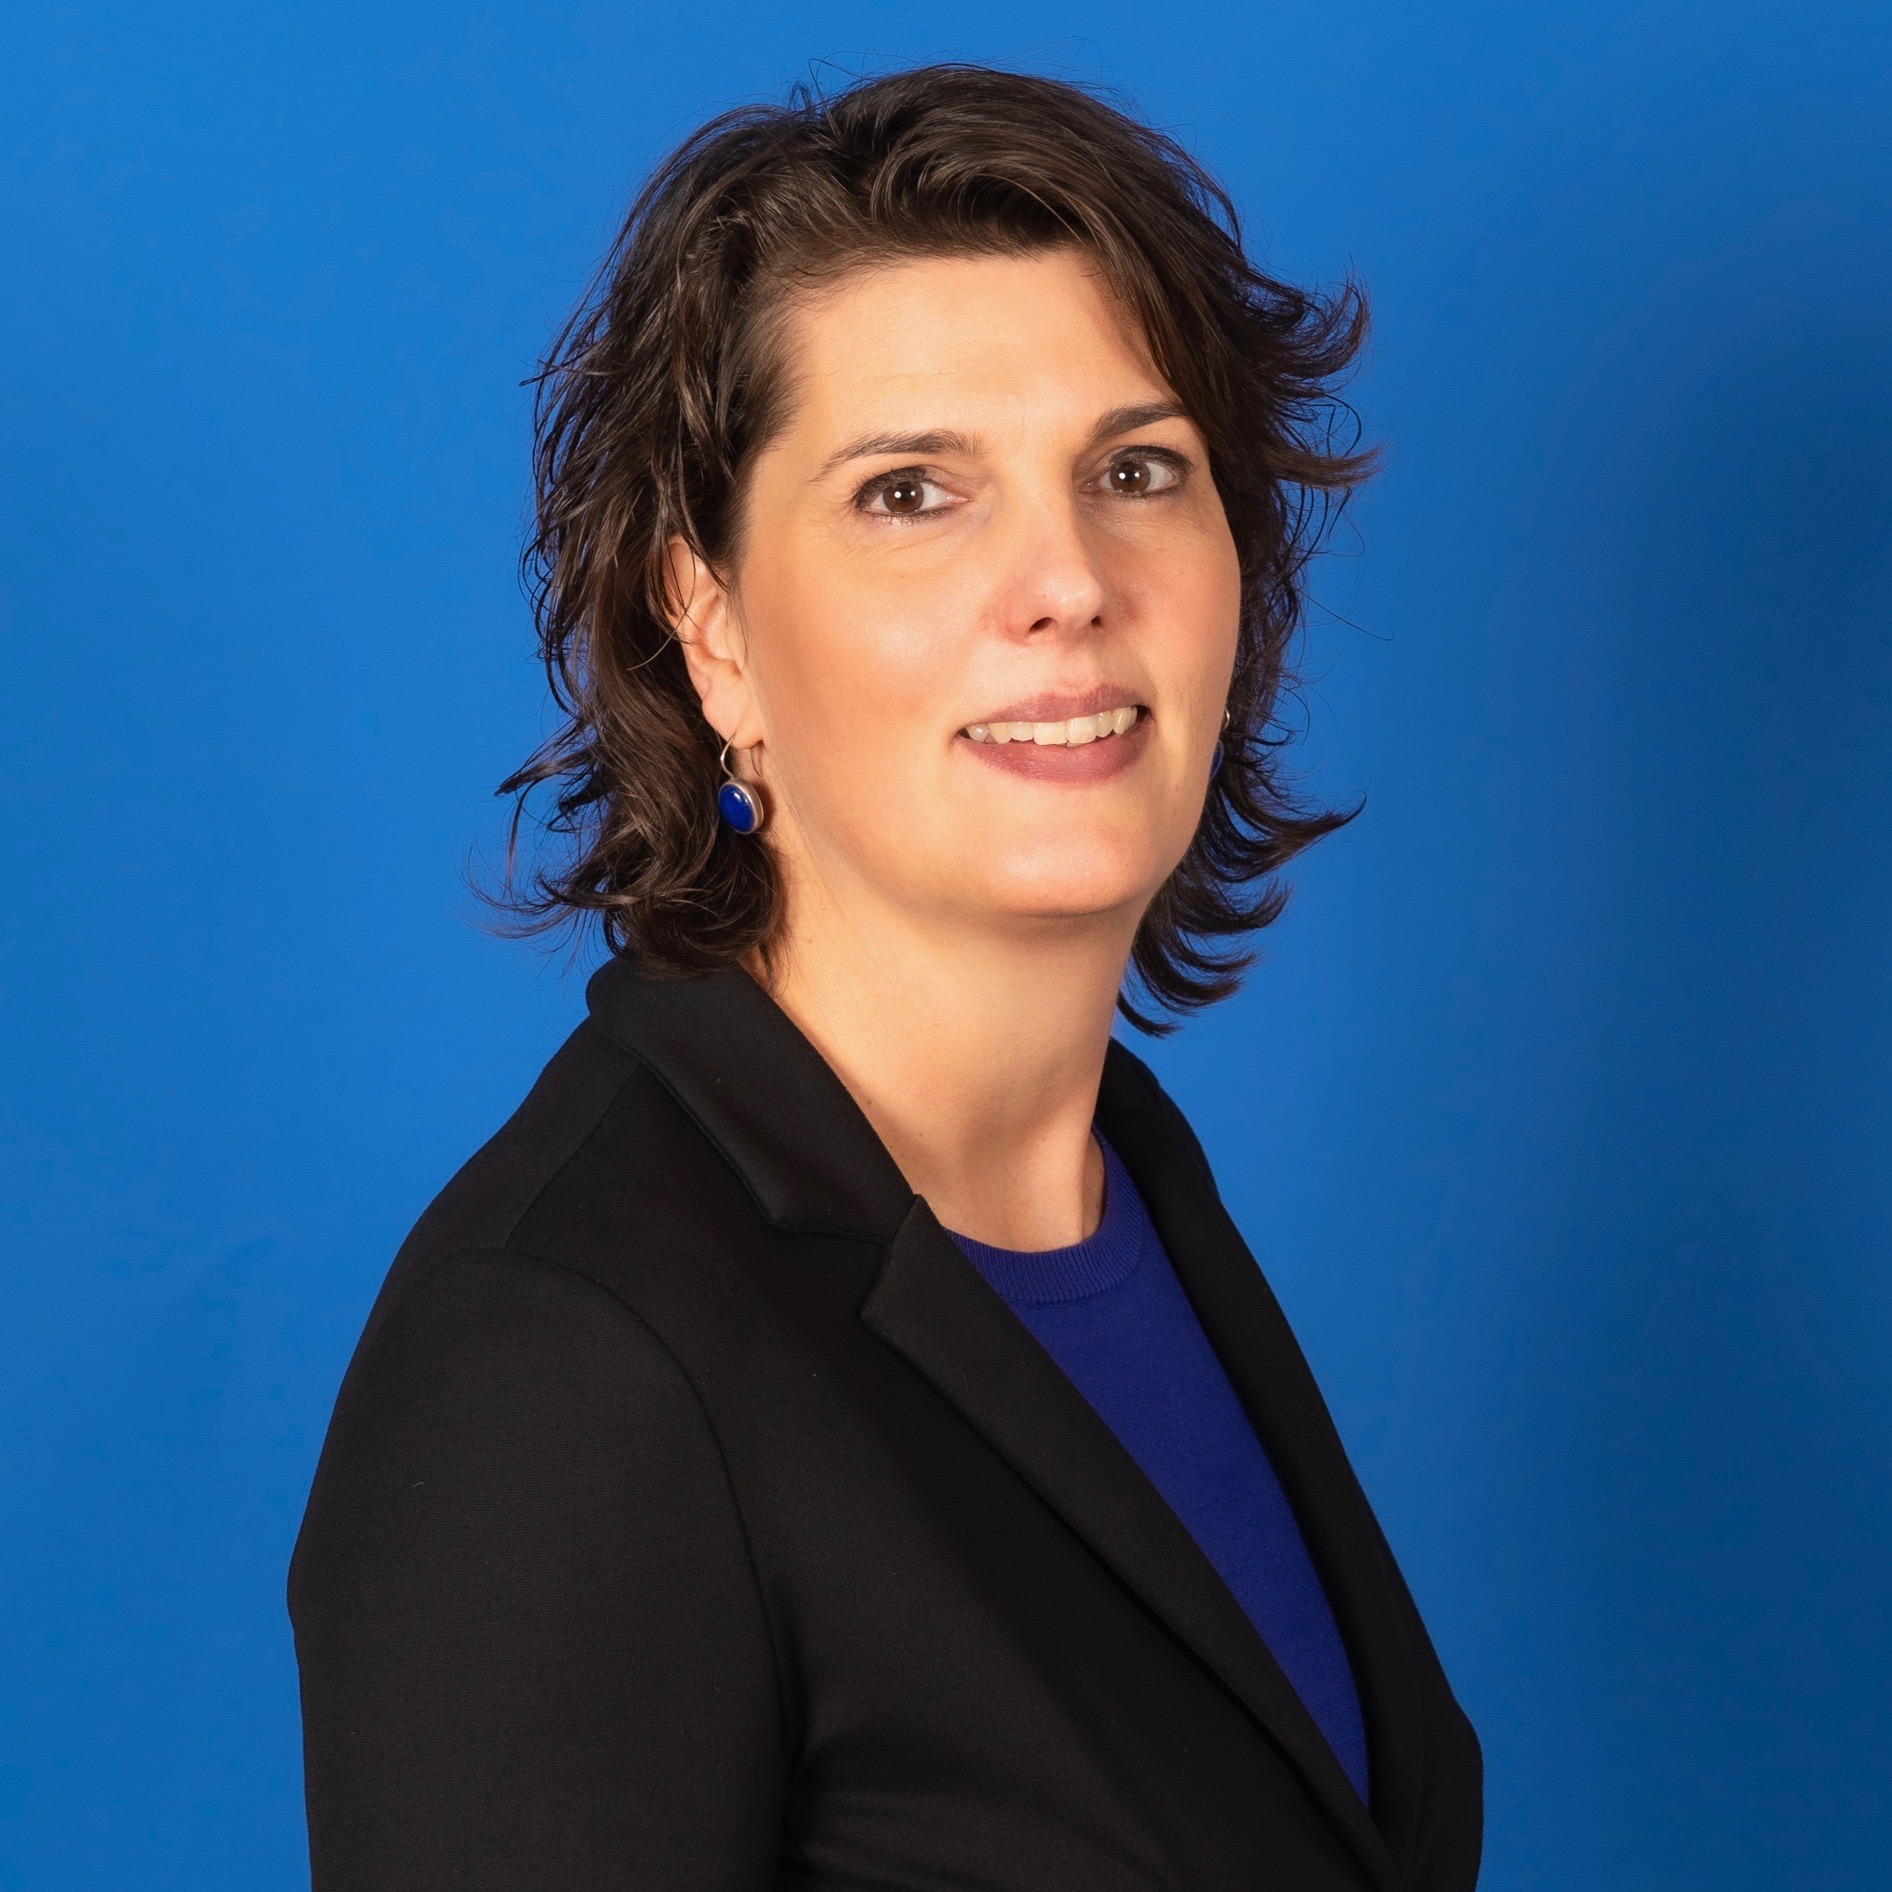 Patricia van Eck: Ervaren familierechtadvocaat en mediator gespecialiseerd in complexe echtscheidingen en ondernemers